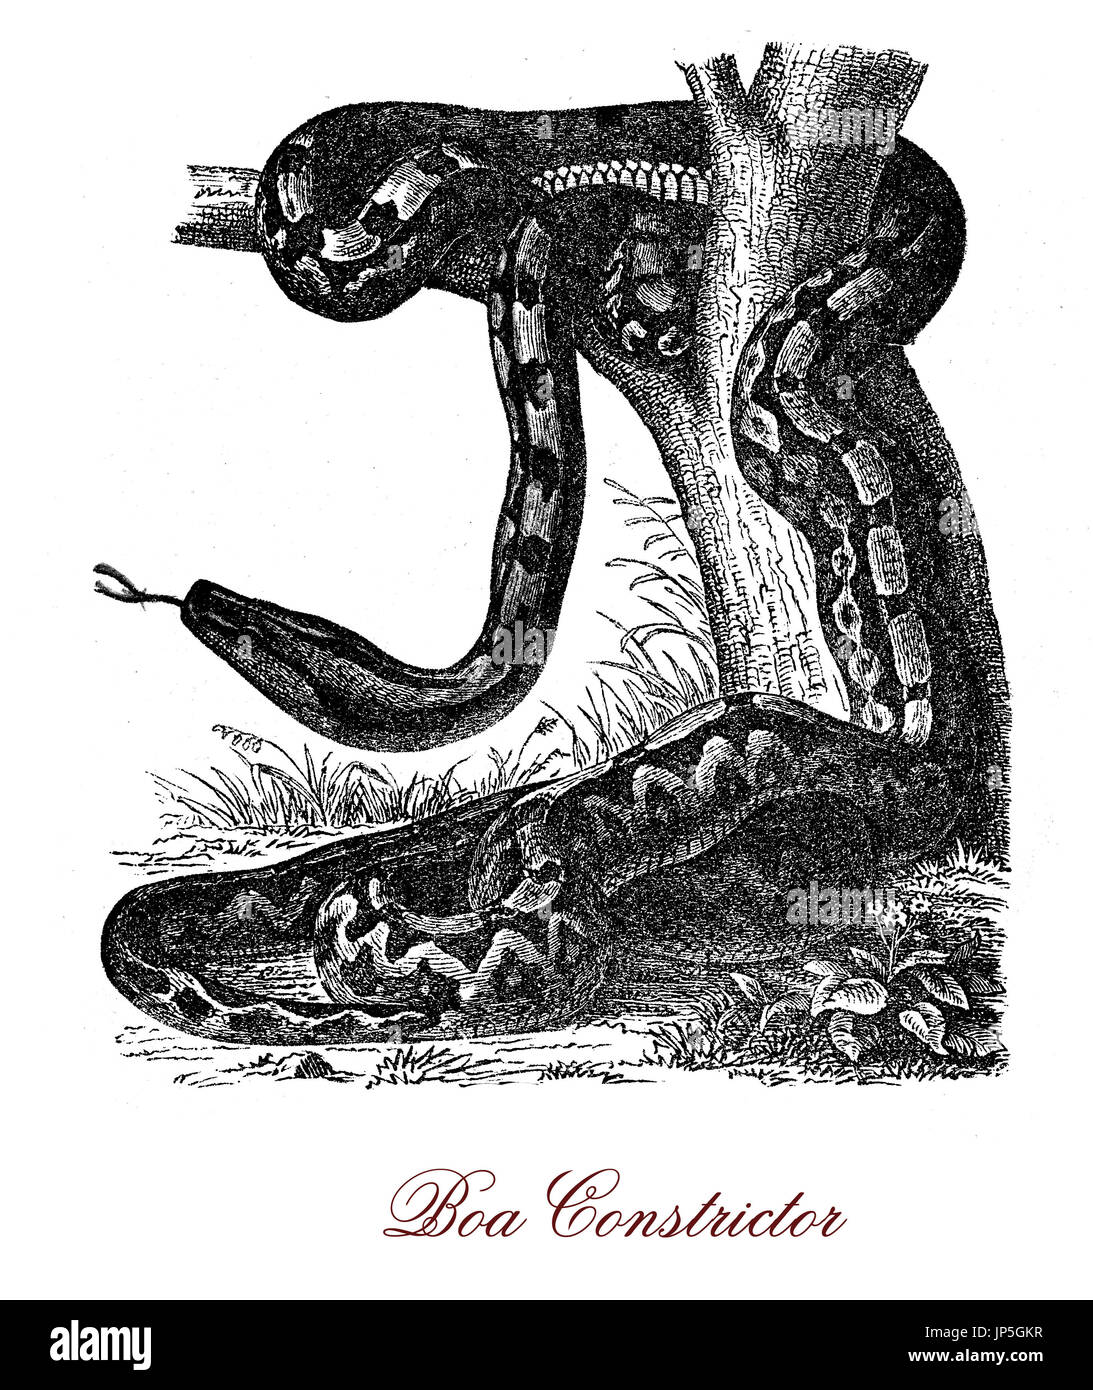 Vintage Porträt von Boa Constrictor, große schwere nachtaktive Schlange stammt aus Amerika, Hinterhalt Raubtier mit Schuppen von Creme und braun Farbe, bequeme Tarnung in den Dschungel. Stockfoto